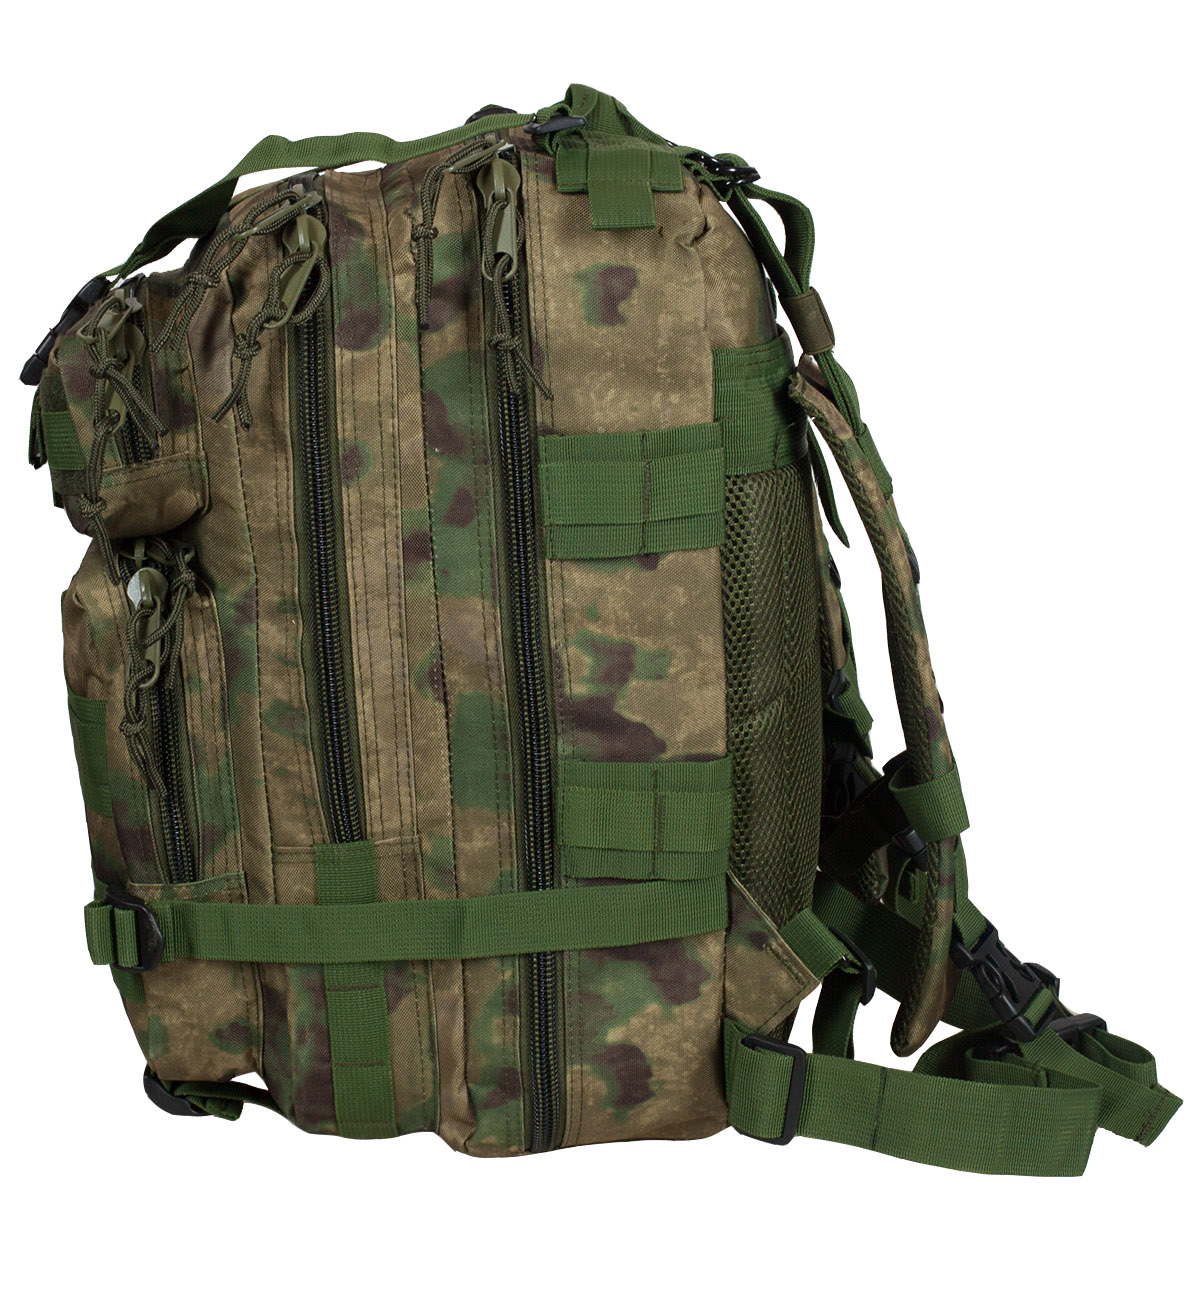 Выгодно купить армейский рюкзак с доставкой